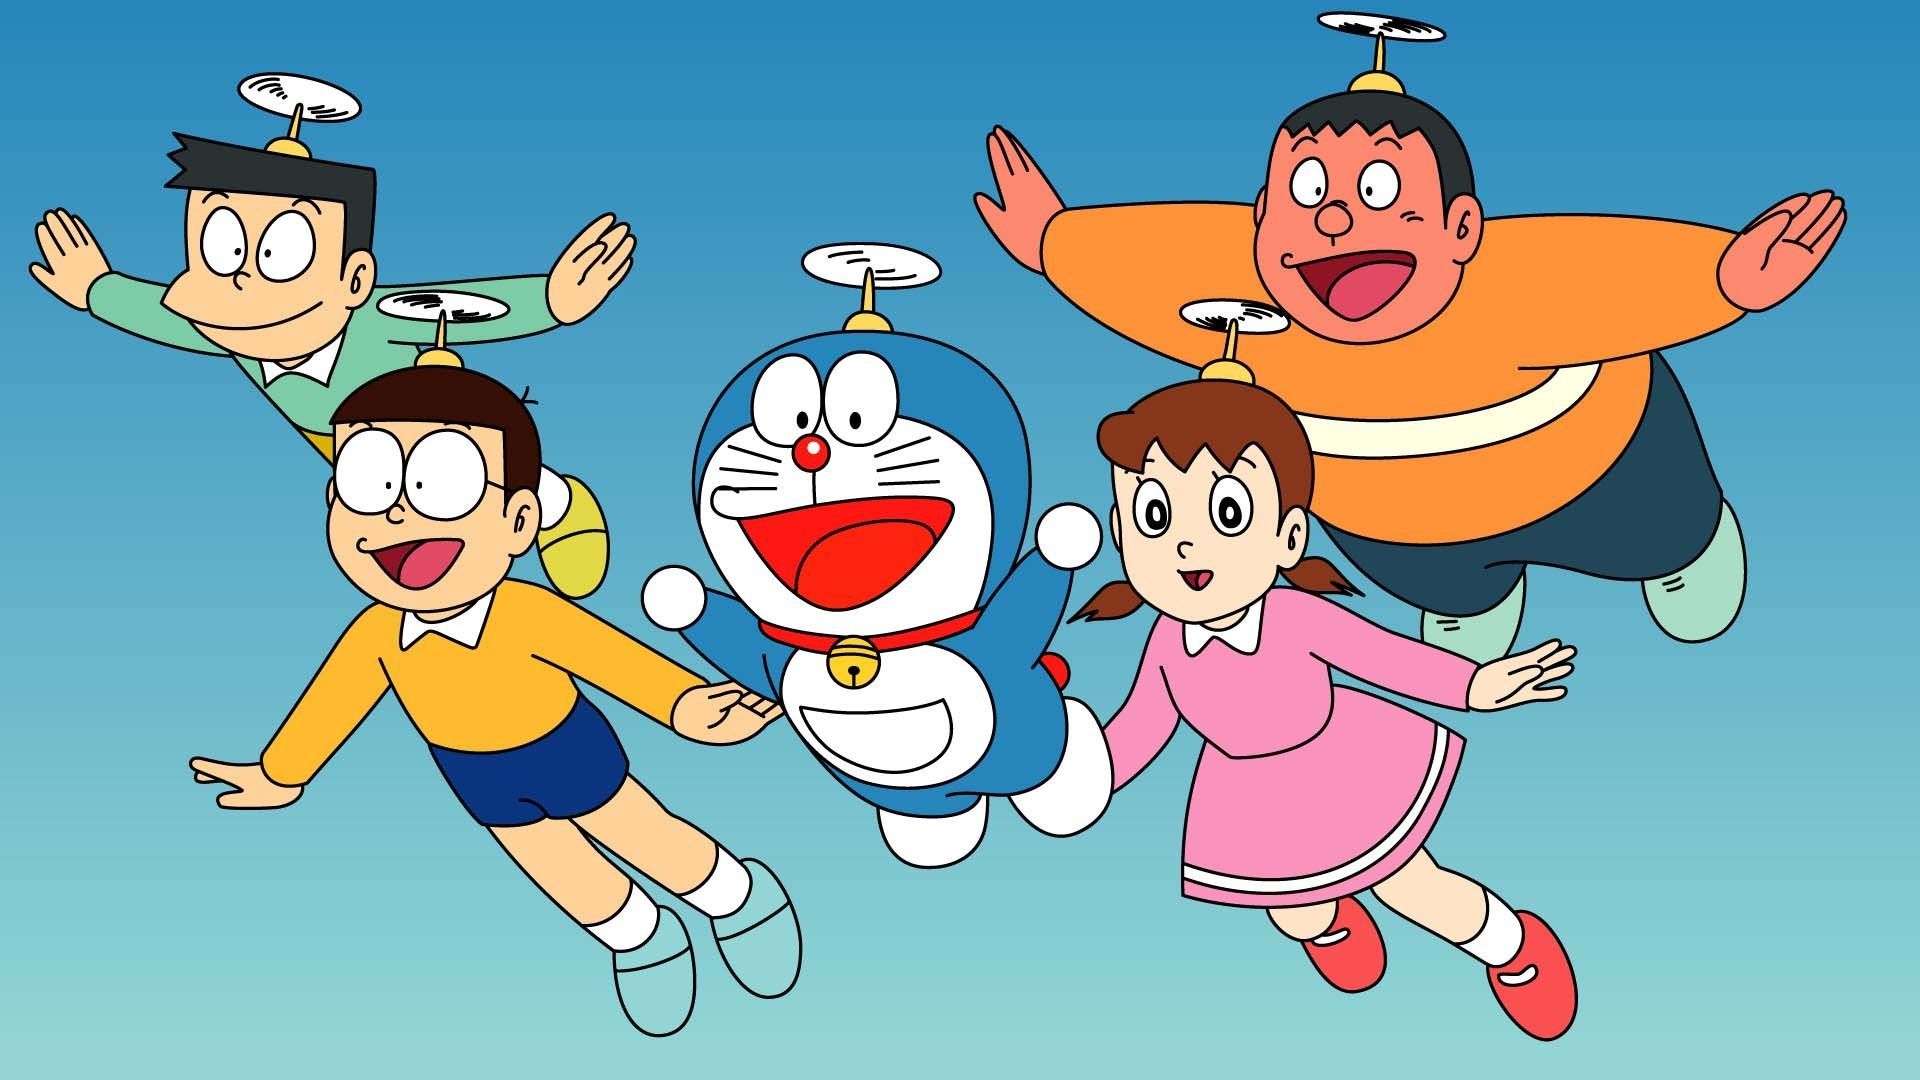 Hình nền Doraemon HD: Tận hưởng phong cách sống đầy màu sắc cùng nhân vật Doraemon qua bộ sưu tập hình nền HD mới nhất. Với độ phân giải cao và hình ảnh rõ nét, bạn sẽ có giờ phút giải trí thật thoải mái và thỏa sức đắm chìm trong thế giới Doreamon. Hãy nhanh tay tải về ngay hôm nay!